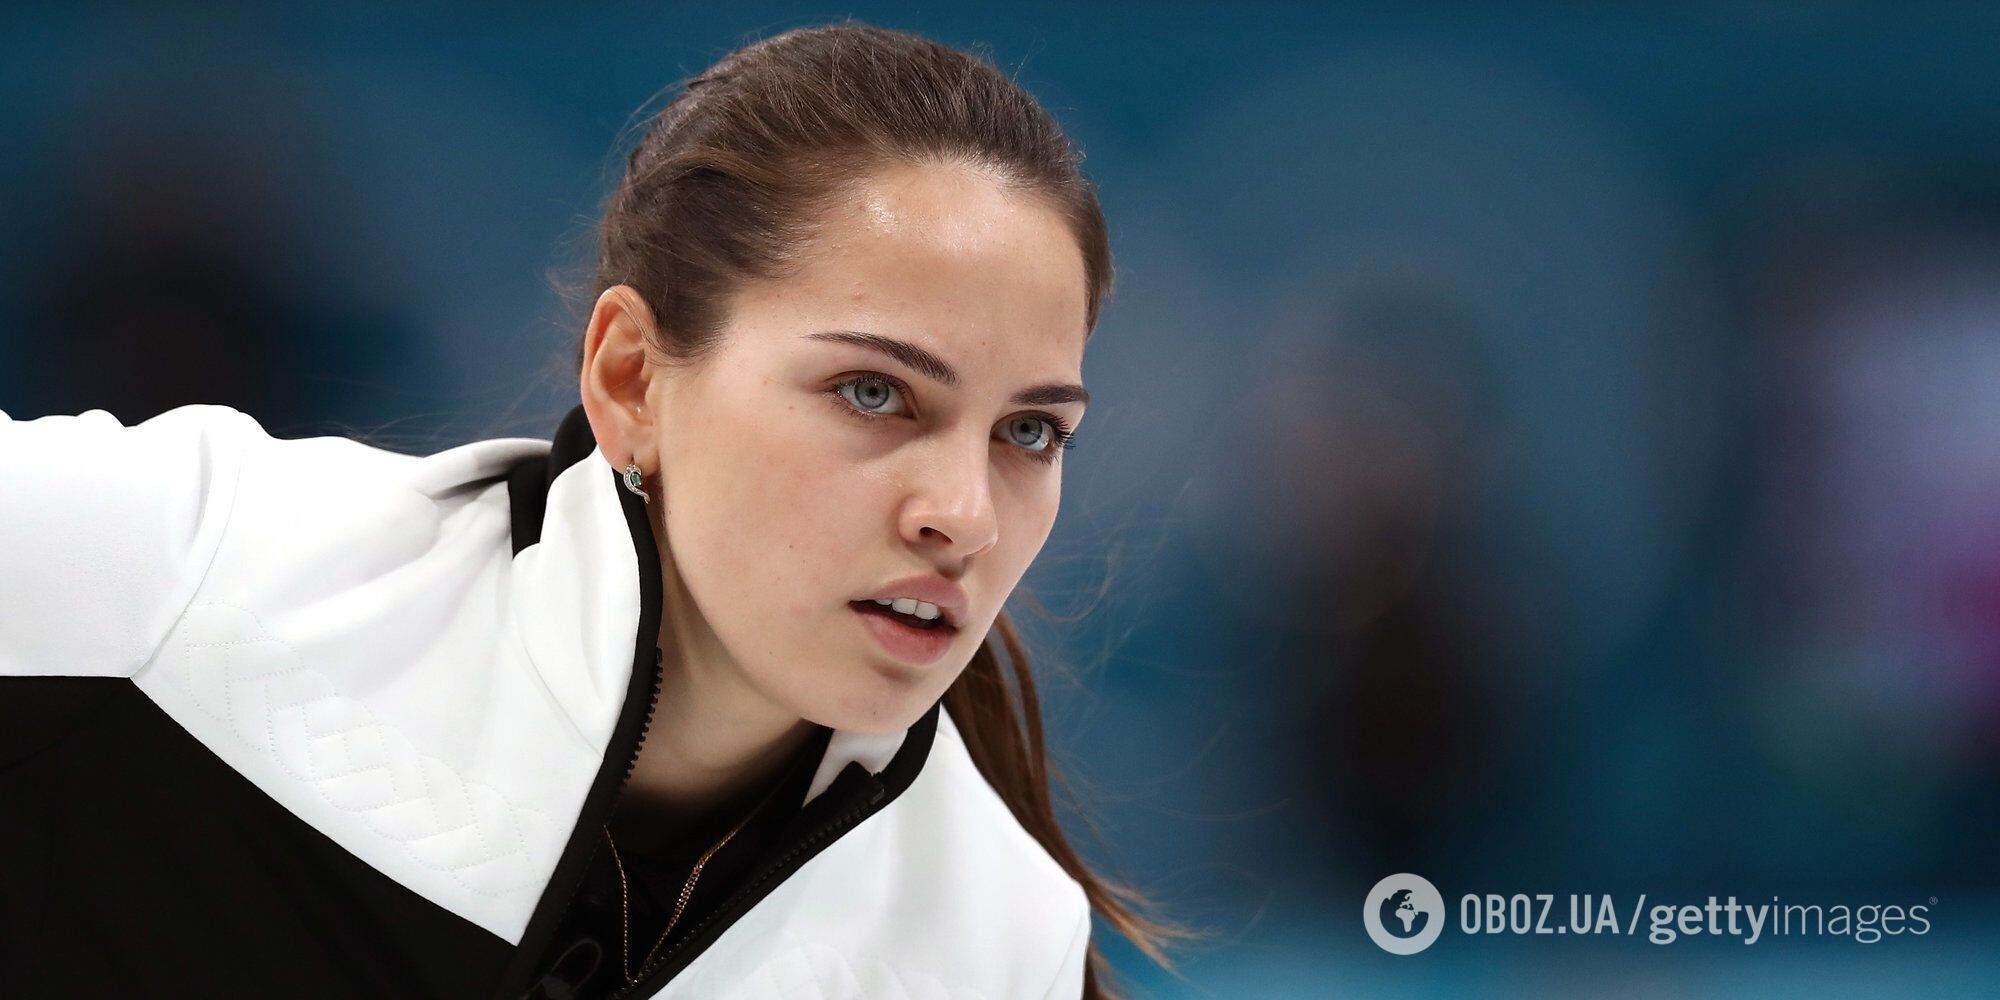 "Огидно": чемпіонка світу з РФ розповіла, як боялася говорити слово "Росія"